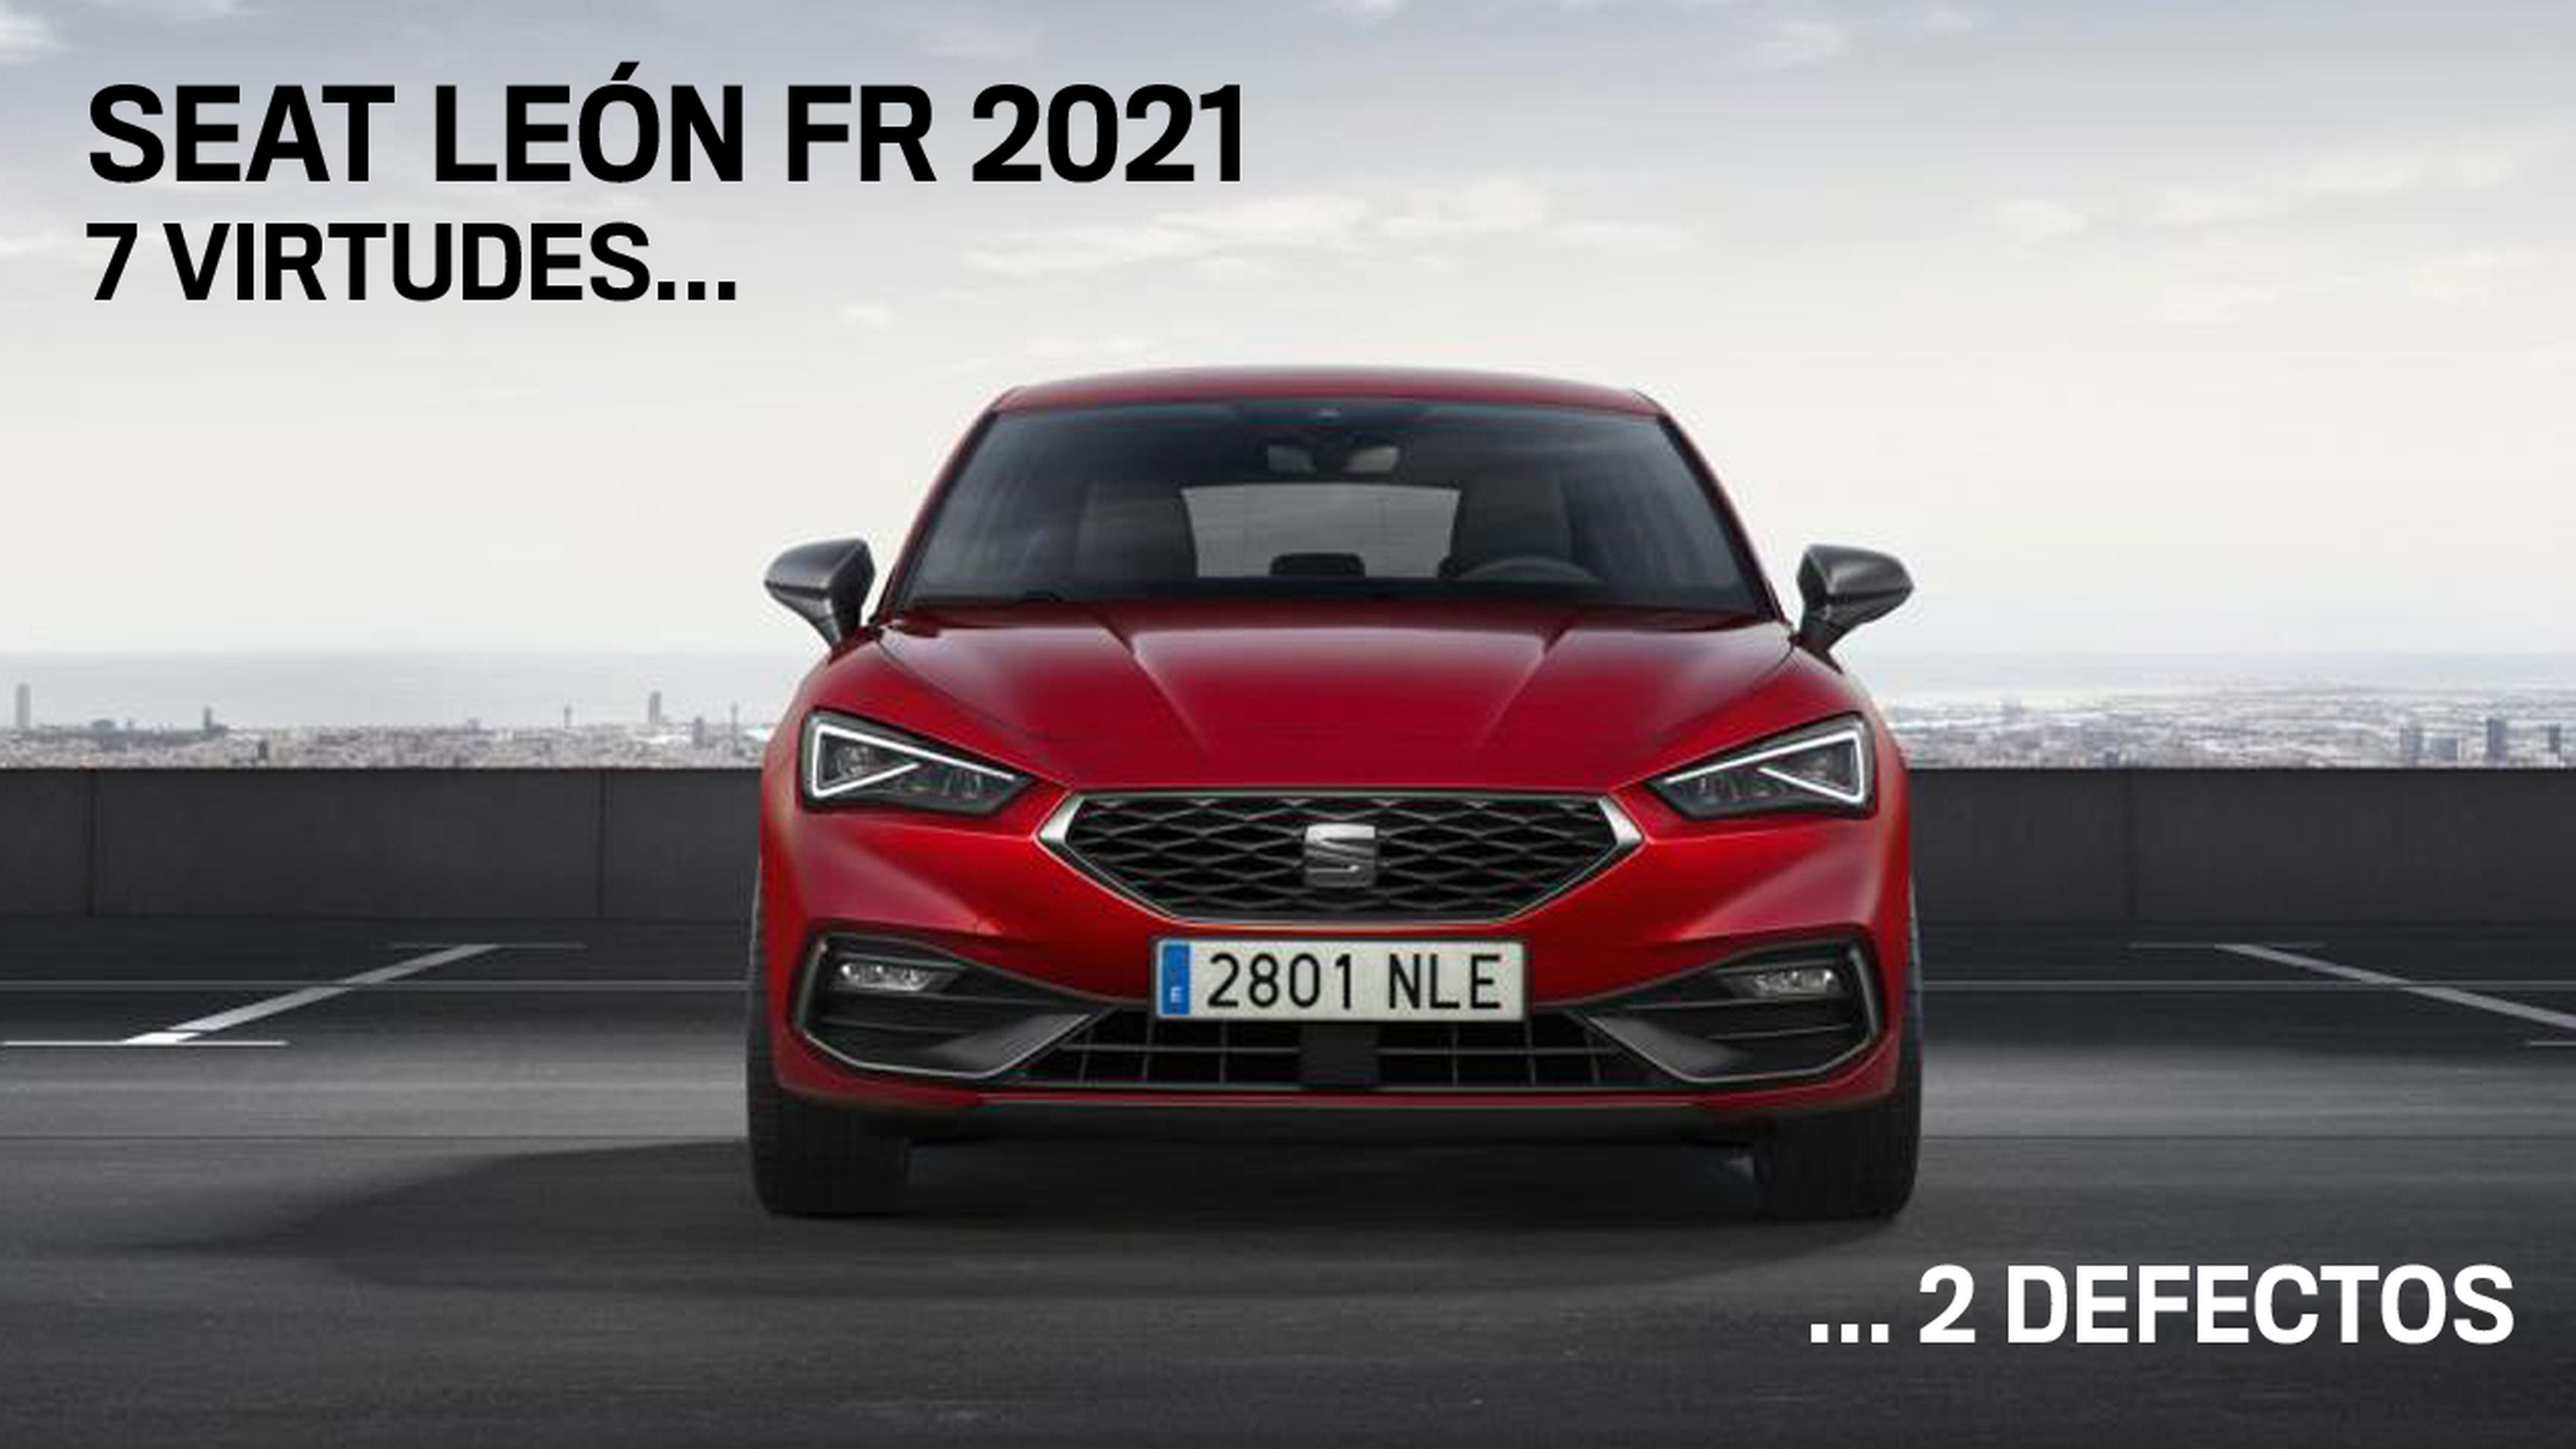 Seat León FR 2021, 7 virtudes y 2 defectos